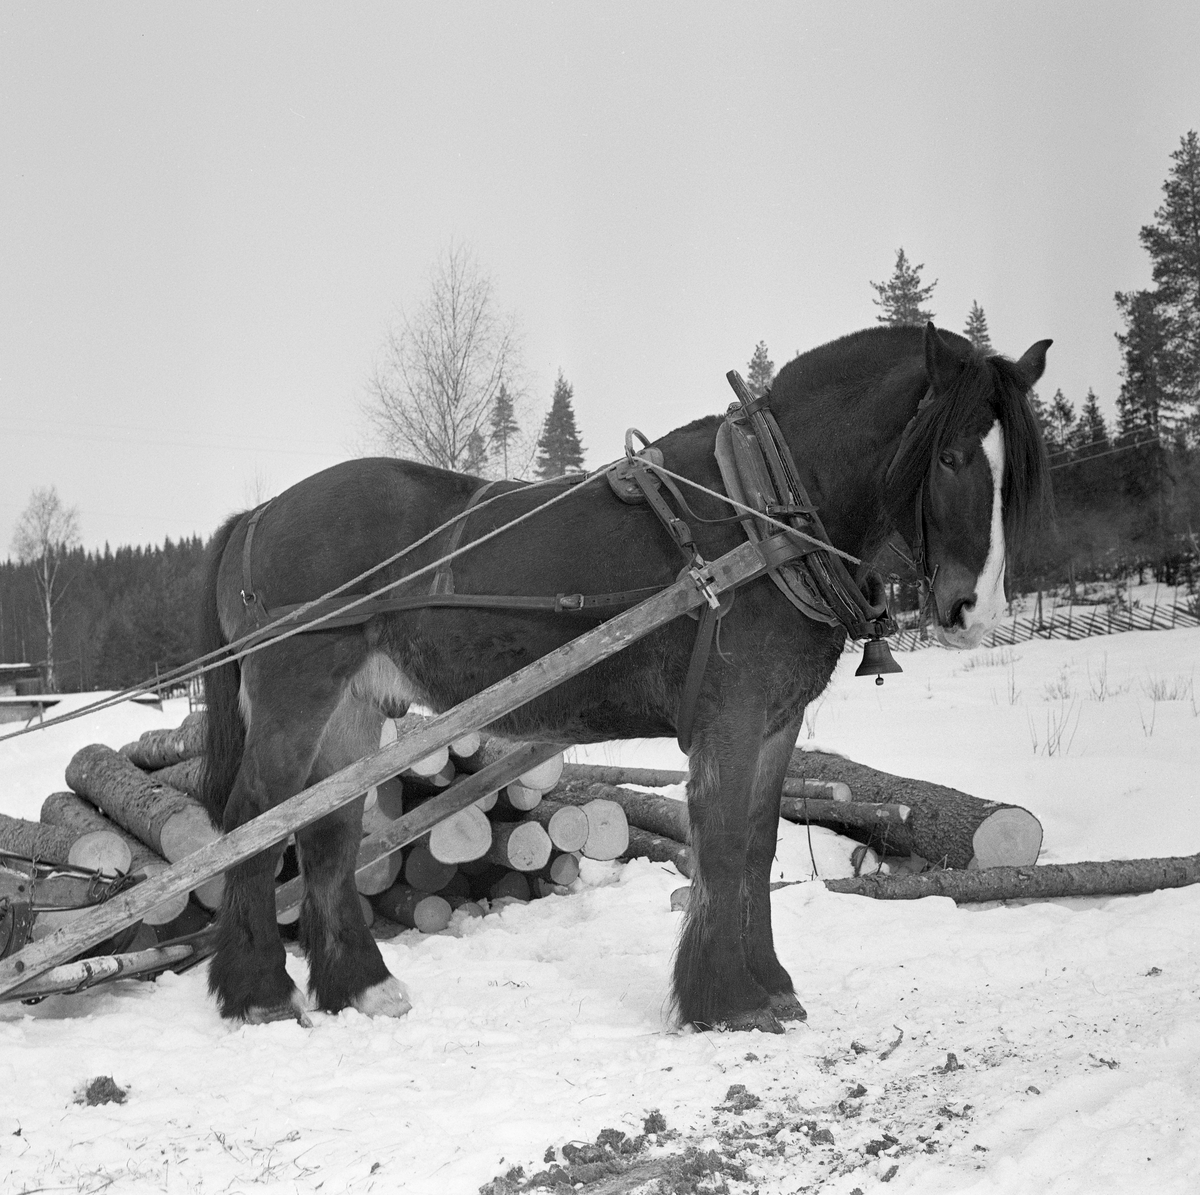 Jørgen Larsens arbeidshest «Blessen», fotografert på en velteplass i Stavåsen i Elverum i Hedmark. Larsen var tømmerkjører og bodde i Hernes. Fotografiet ble tatt vinteren 1971. Hesten hadde arbeidssele og var forspent en tømmerrustning («bukk og geit») som ikke er med på dette bildet. Det var seletøyet som gjorde det mulig å trekke, bremse og rygge med hesten.  Dette er en bogtresele med ei stoppet ringpute, som var tredd over hodet på hesten slik at den lå an mot nakken og bringen på trekkdyret. I bogtrærne var det fastsydd «drotter», kraftige draglær som endte i trekkpunkter ved overgangen mellom hestens bog- og brystparti. Der var det en «orring» som var forankringspunkt for «bukgjorden» (reima under den fremre delen av hestebuken) og «oppholdsreimene», som var festet i ytterendene av «høvret», ei bøyle som var montert på tvers av hestens manke med avrundete treplater, «høvreballer», som anleggspunkter. På oversida av høvret var det ringer, som tømmene var ført gjennom. «Bakselen» - ei  kraftig reim som var ført fra drotten rundt hestens bakpart (lårene og under halen), og som ble holdt oppe av ei «ryggreim» og ei «kryssreim» - gjorde det mulig for hesten å bremse lassene i utforbakker. «Draget» (skjækene) var festet i en jerntapp («oren») som var smidd sammen med orringen ved hjelp av en selepinne. Selereimene skulle justeres slik at det gikk ei noenlunde rett linje fra drotten gjennom skjækene til trekkpunktene fremst på sleden. I brystreima, som forbandt de nedre endene ab bogtrærne, var det festet ei bjelle som under kjøringa skulle varsle andre andre som befant seg på vegene i skogen om at det kom en hest med tungt lass.